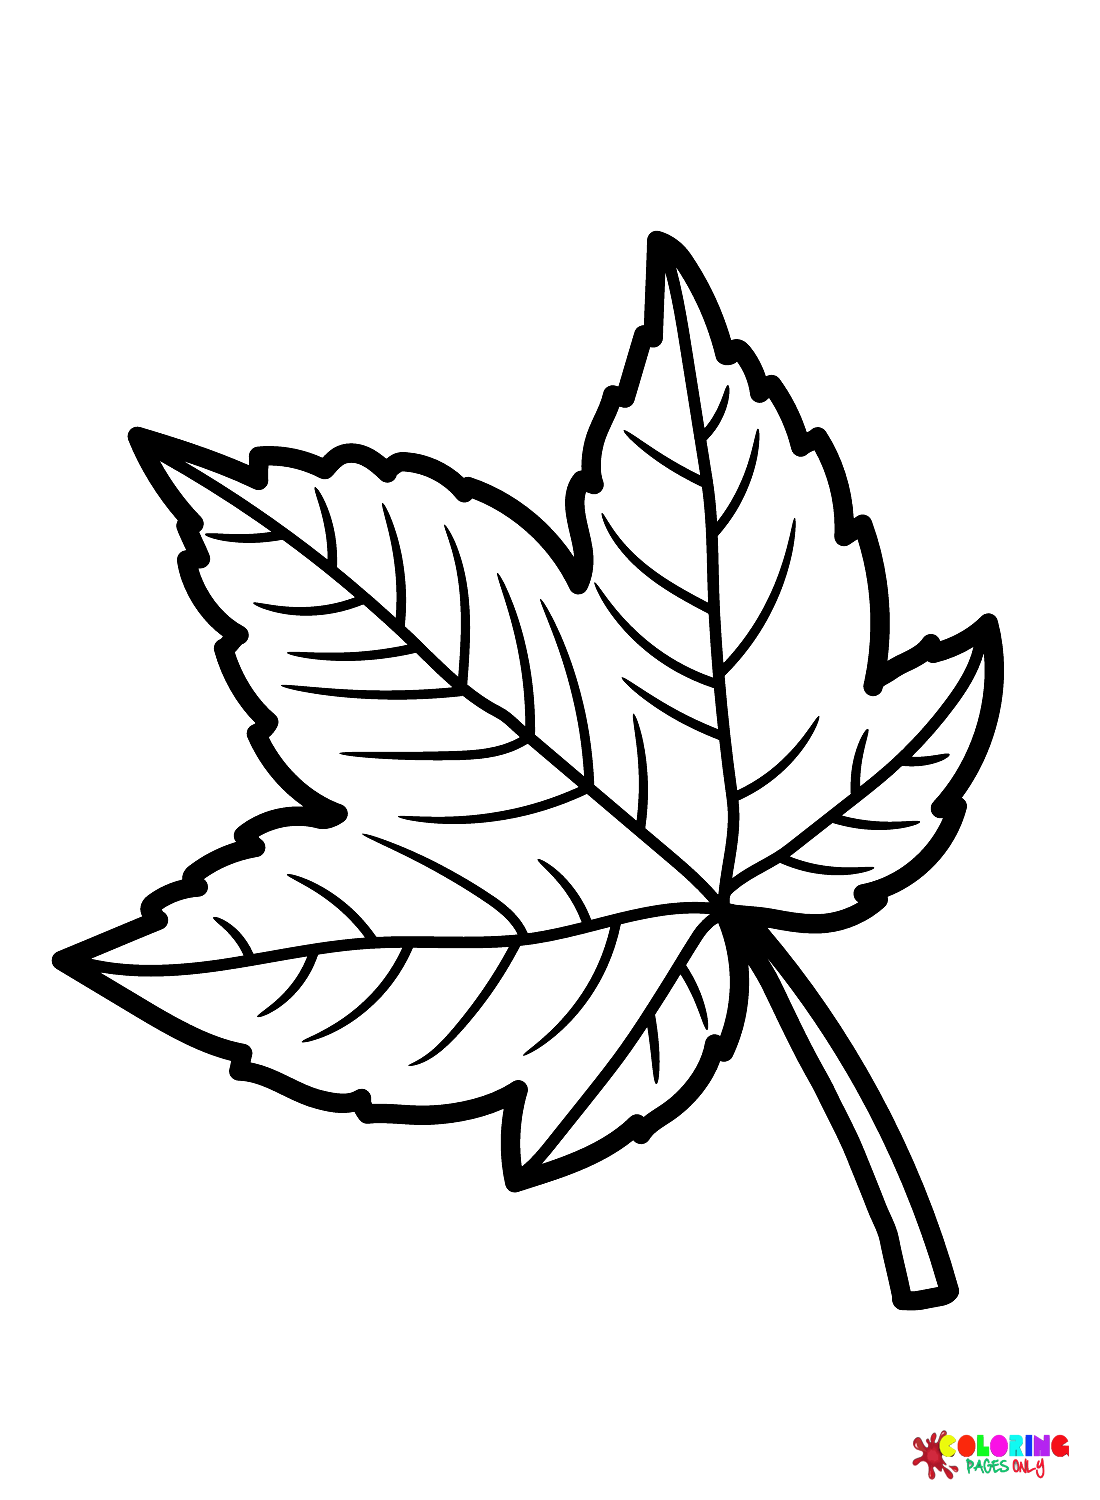 Sycamore blad kleurplaat